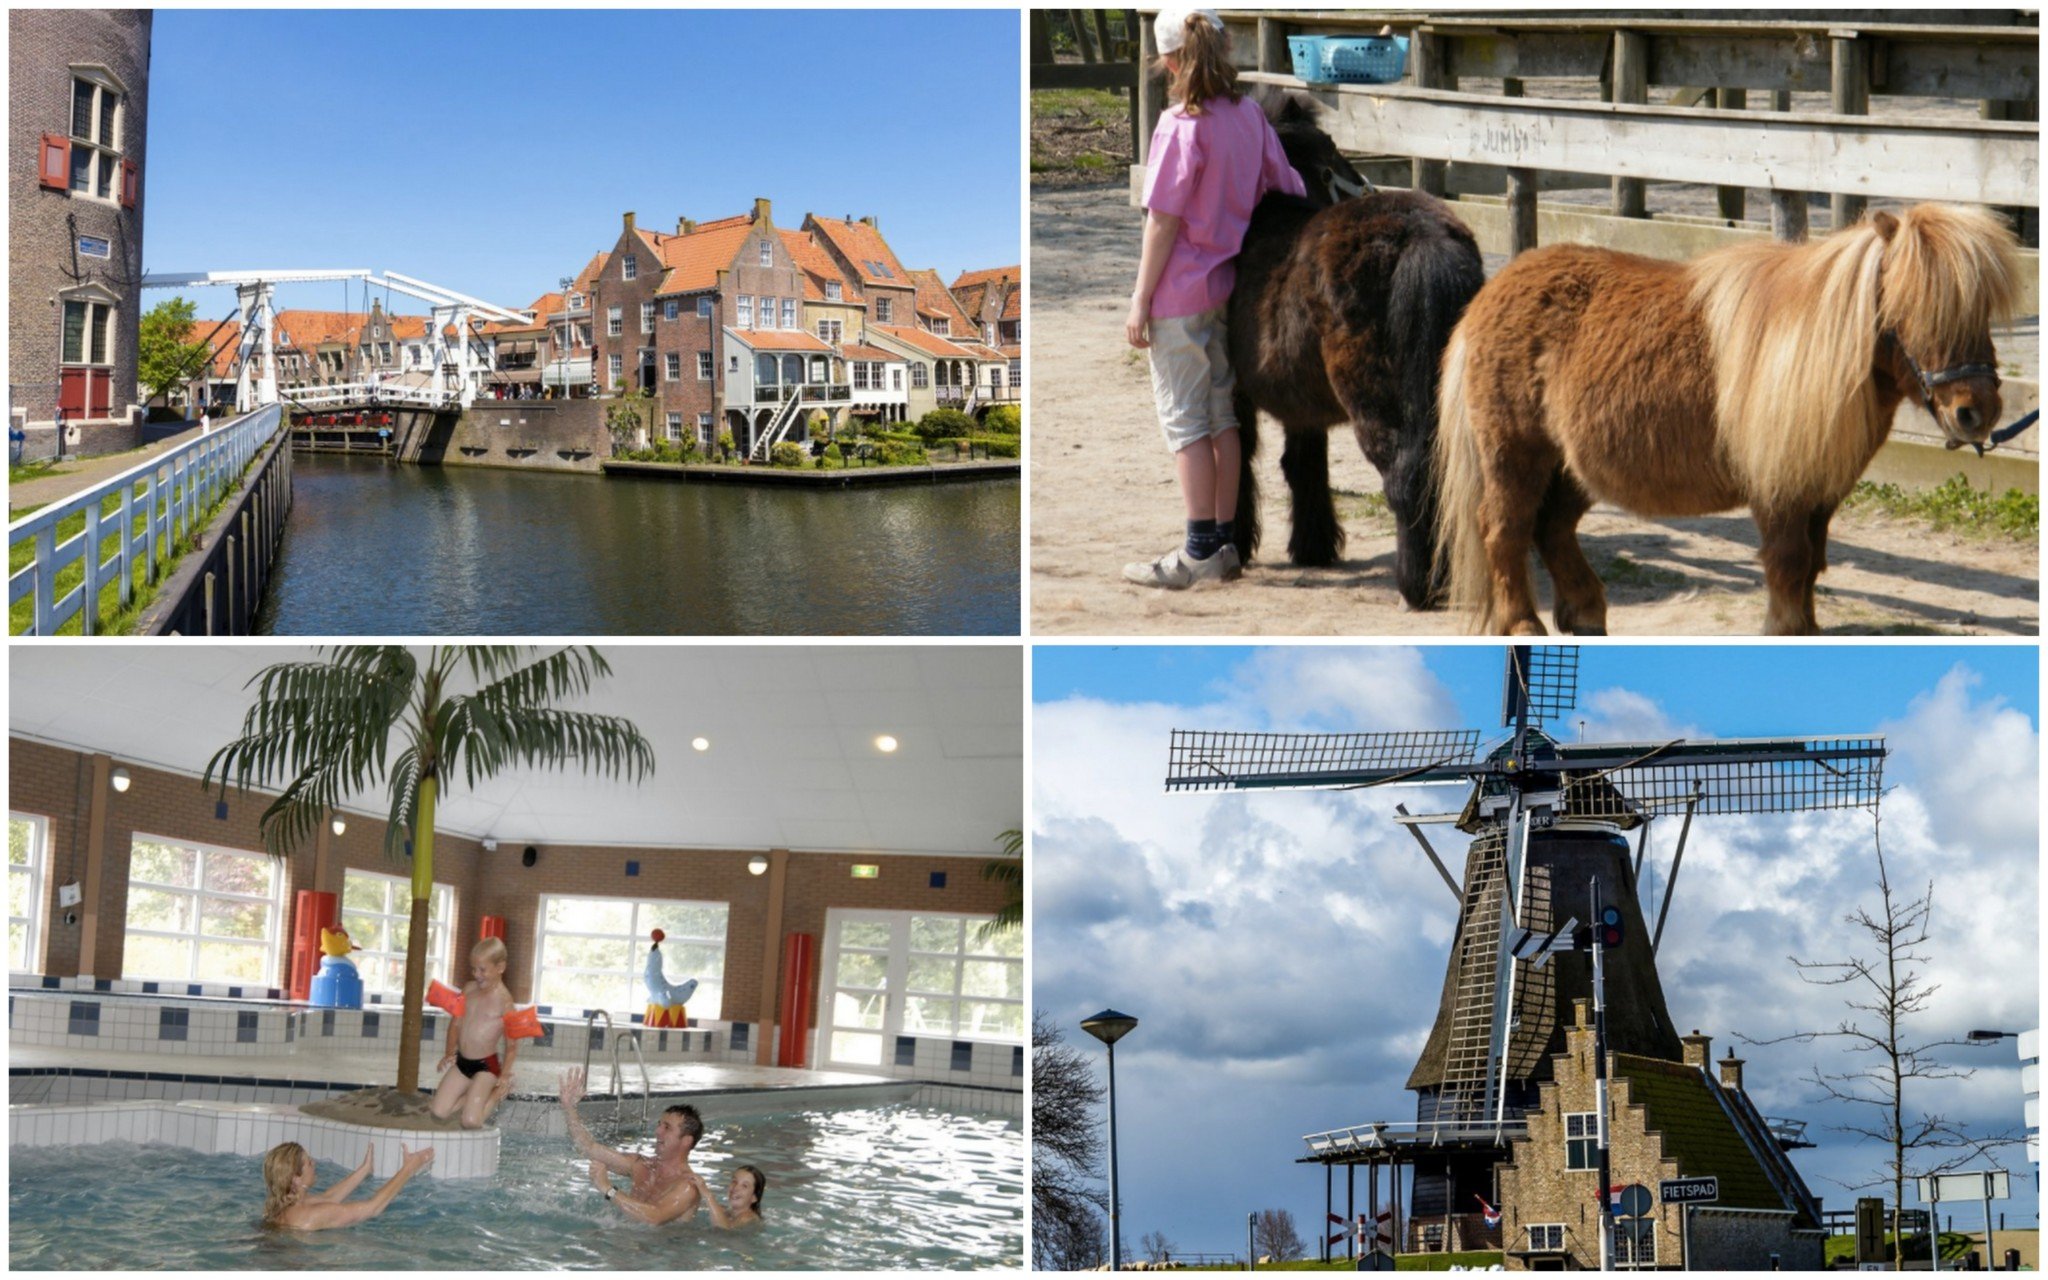 Ferienpark in Holland 5 Tage in einer Villa für 31,50€